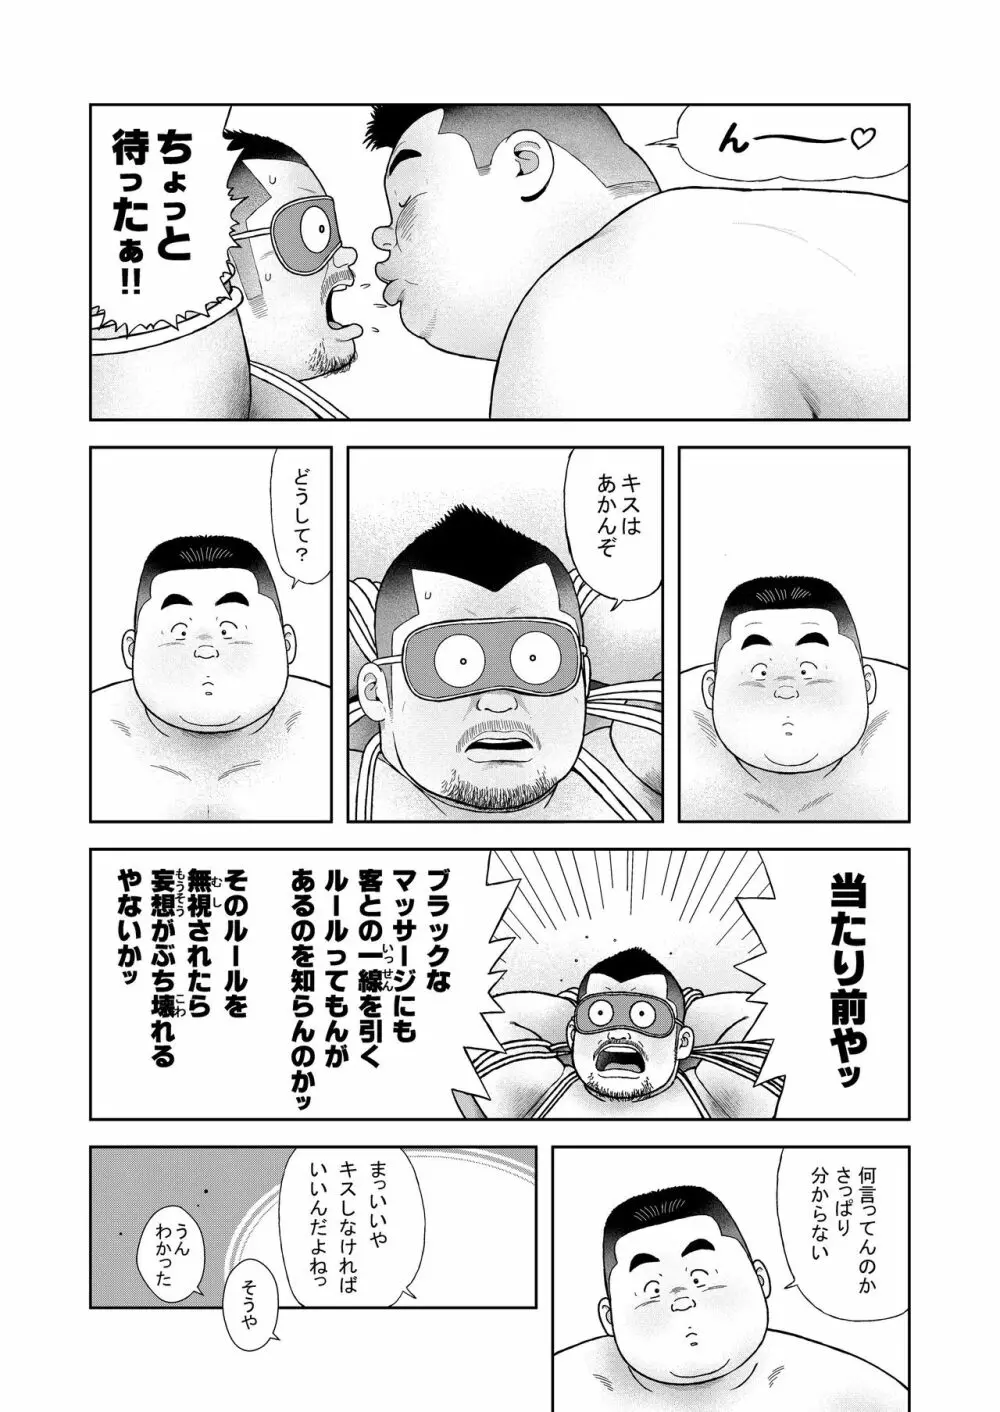 くの湯 四発め 芸人の性 - page14